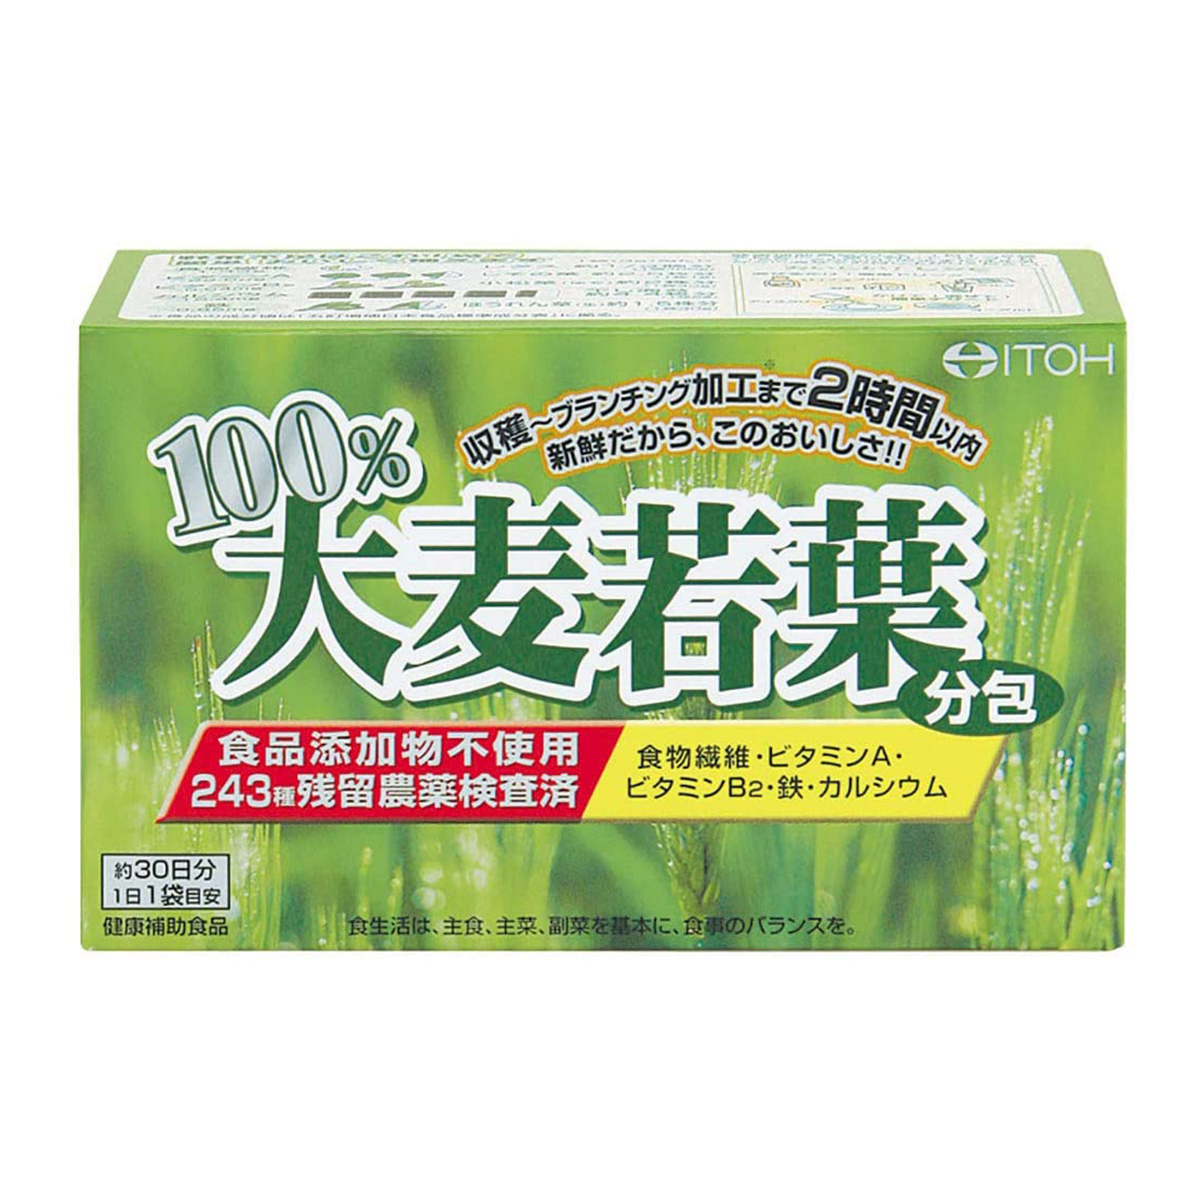 井藤漢方製薬 井藤漢方製薬 100%大麦若葉 分包 30袋×1個 青汁の商品画像